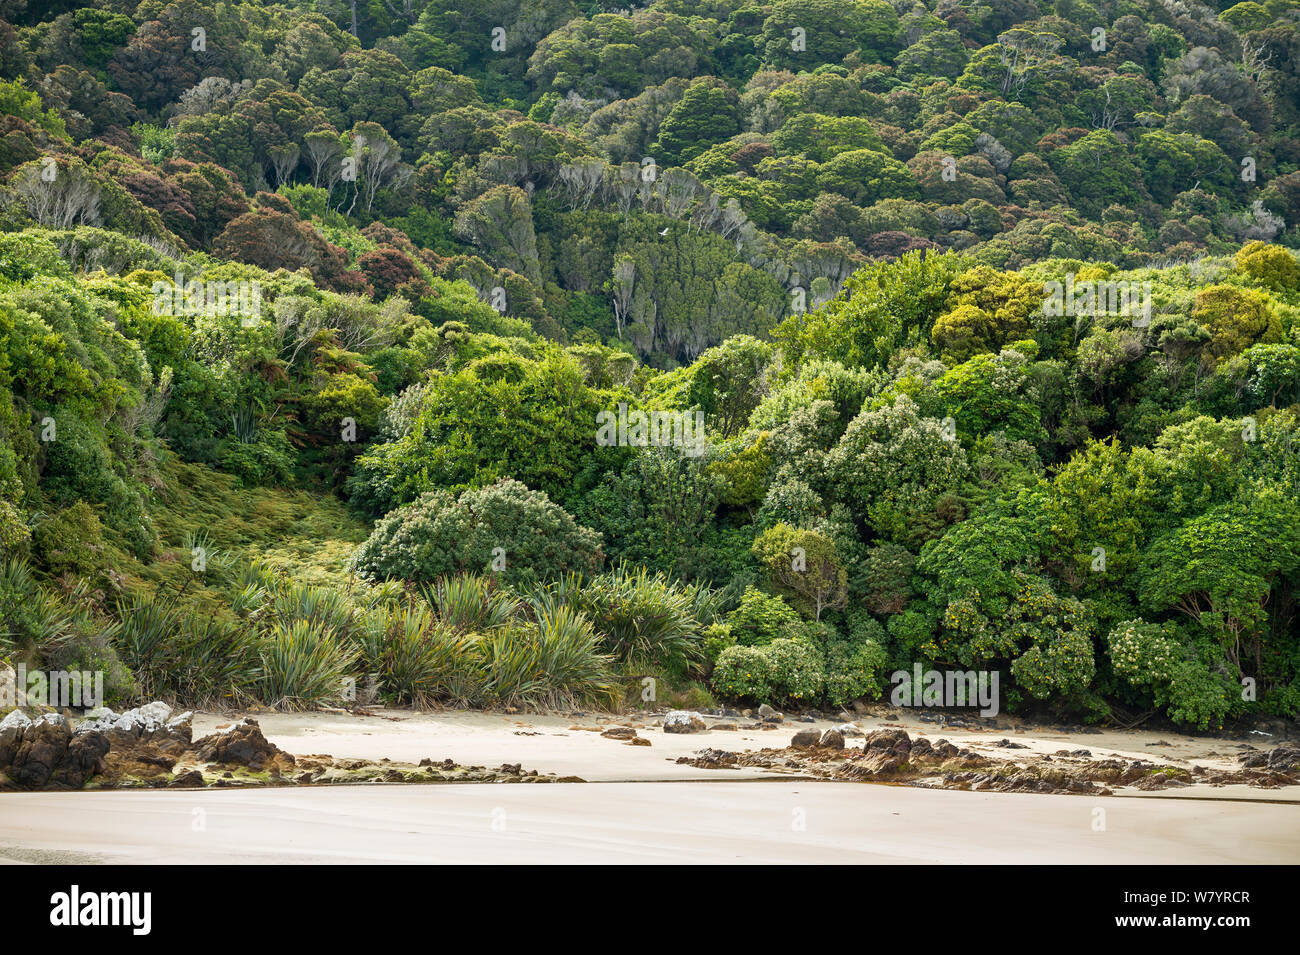 L'île de morue / Whenua Hou, principal habitat de l'espèce menacée de façon critique, Southland, Nouvelle-Zélande, février. Banque D'Images